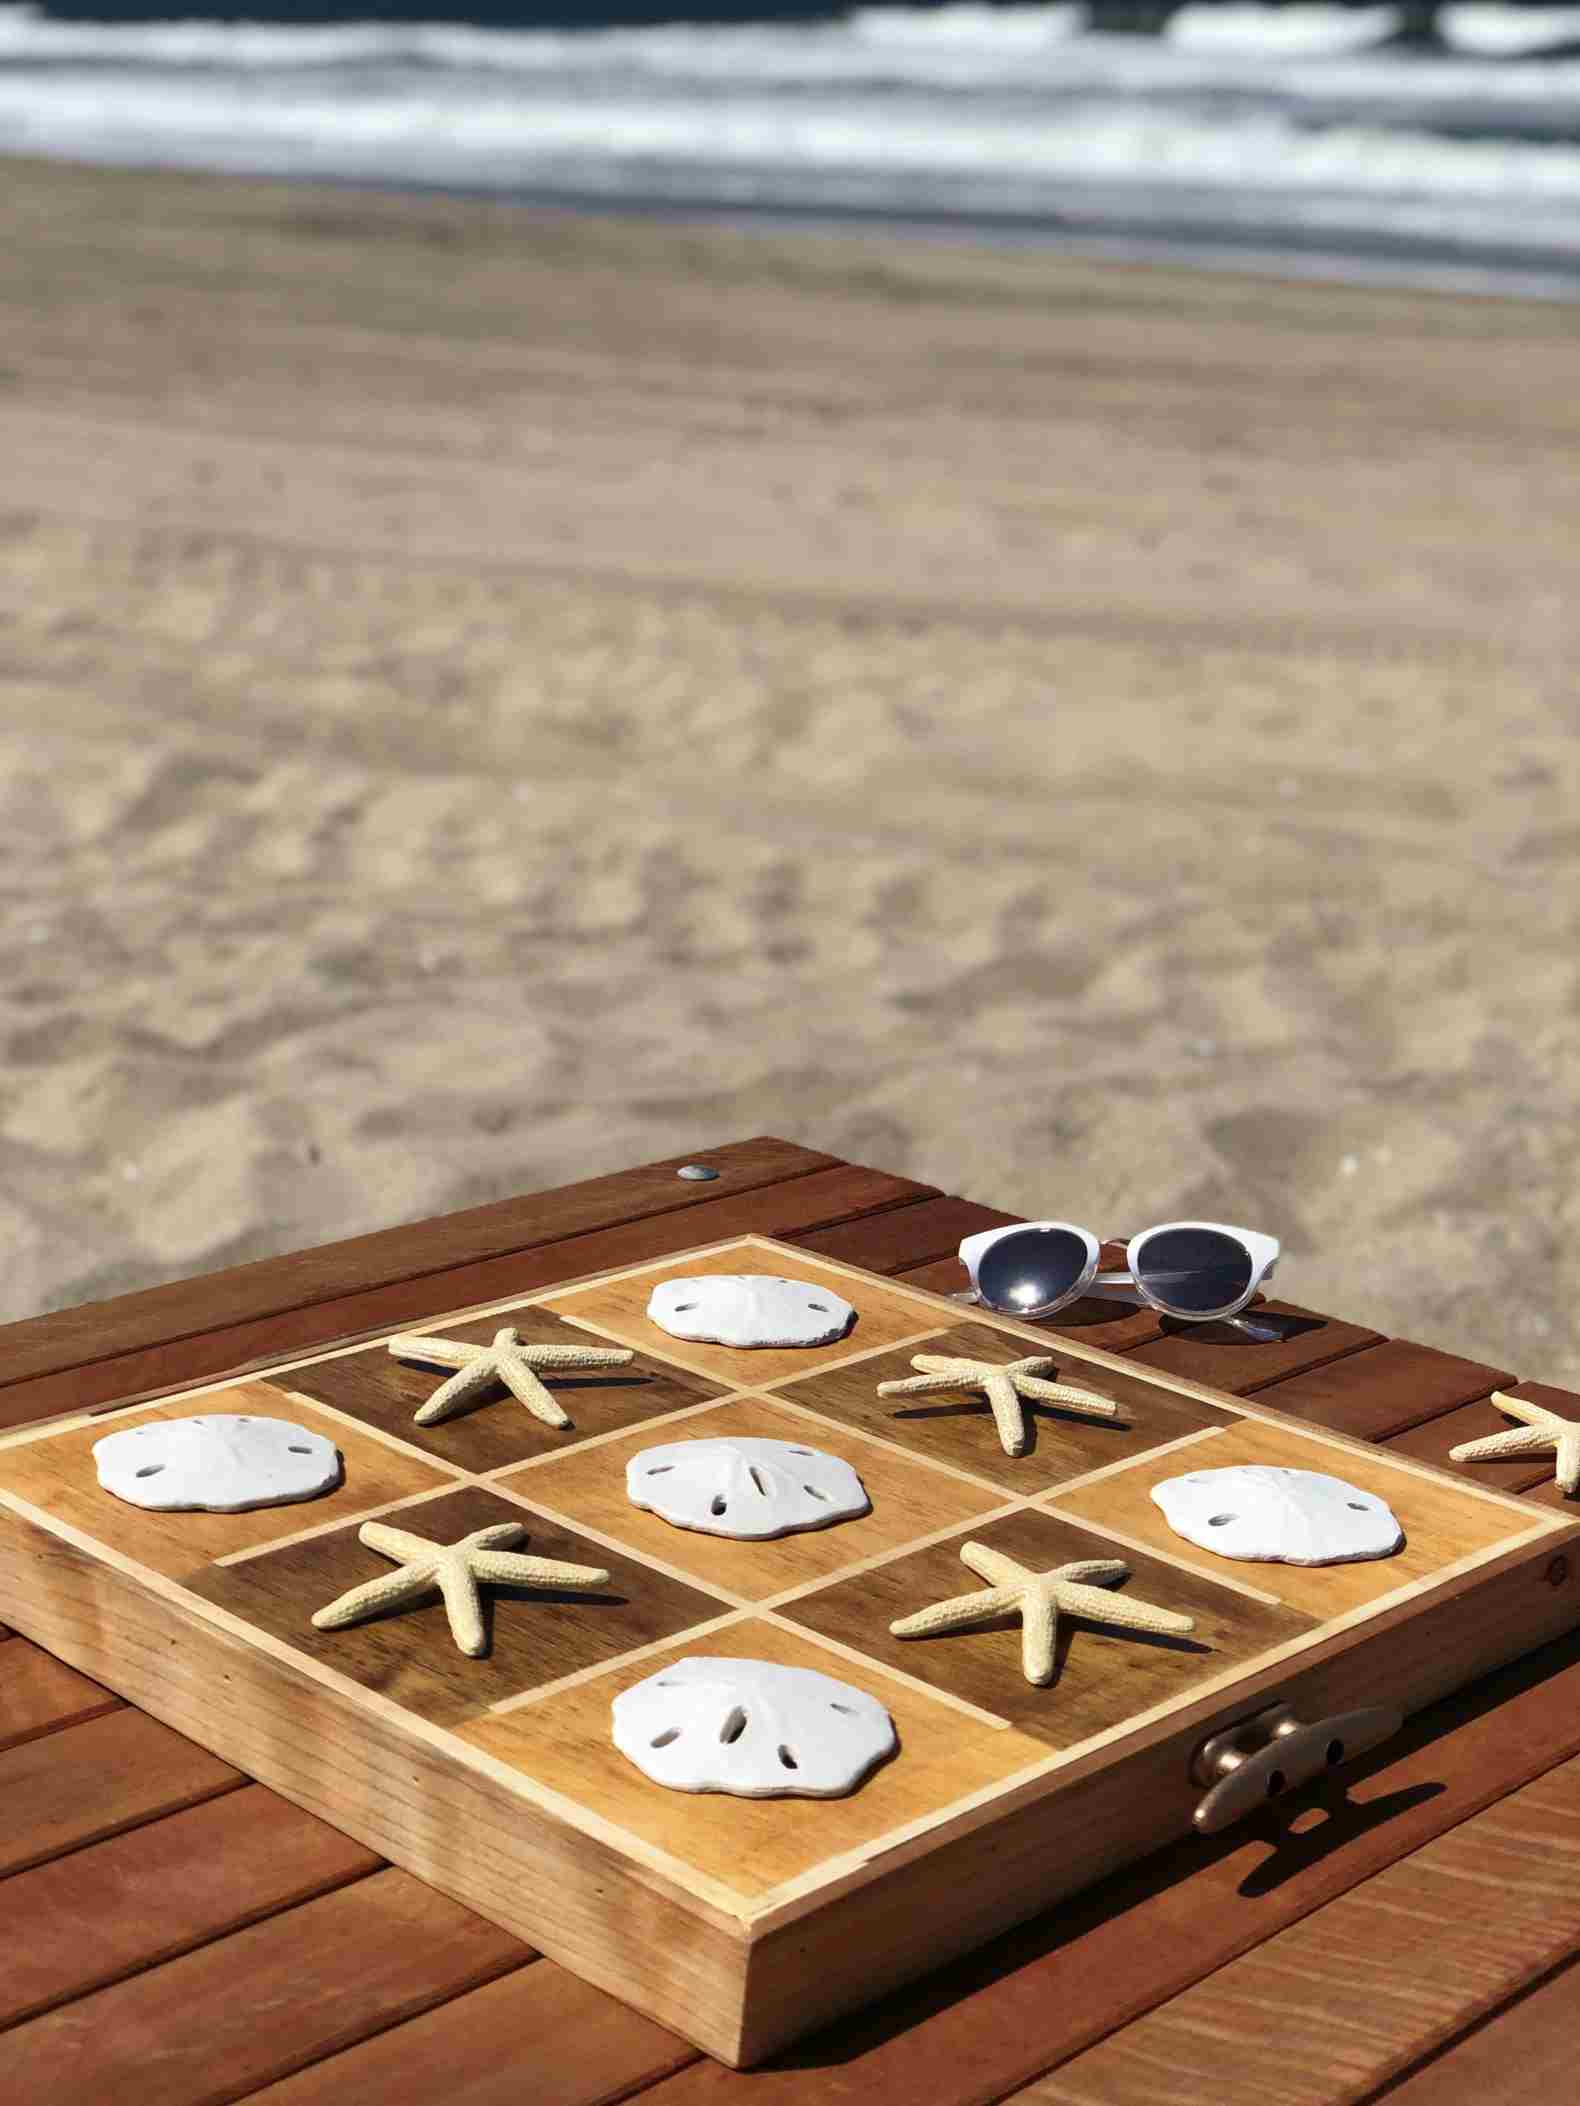 Activities on the beach Spieletic tac toe play Muscheln Sammeln